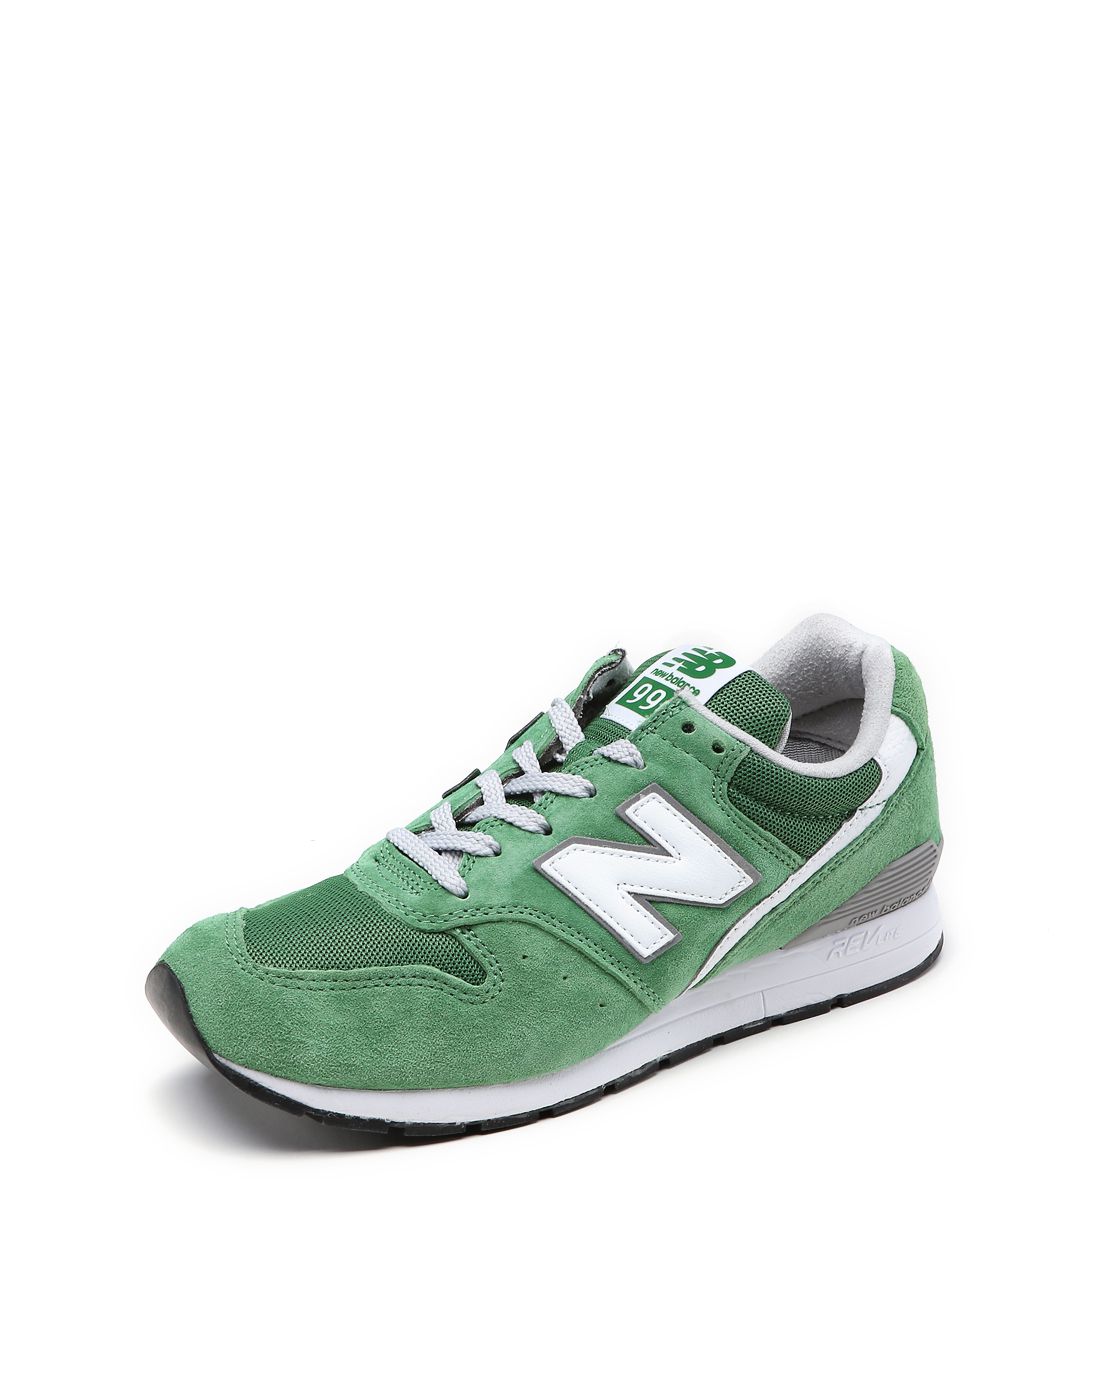 996系列 中性款绿色经典鞋